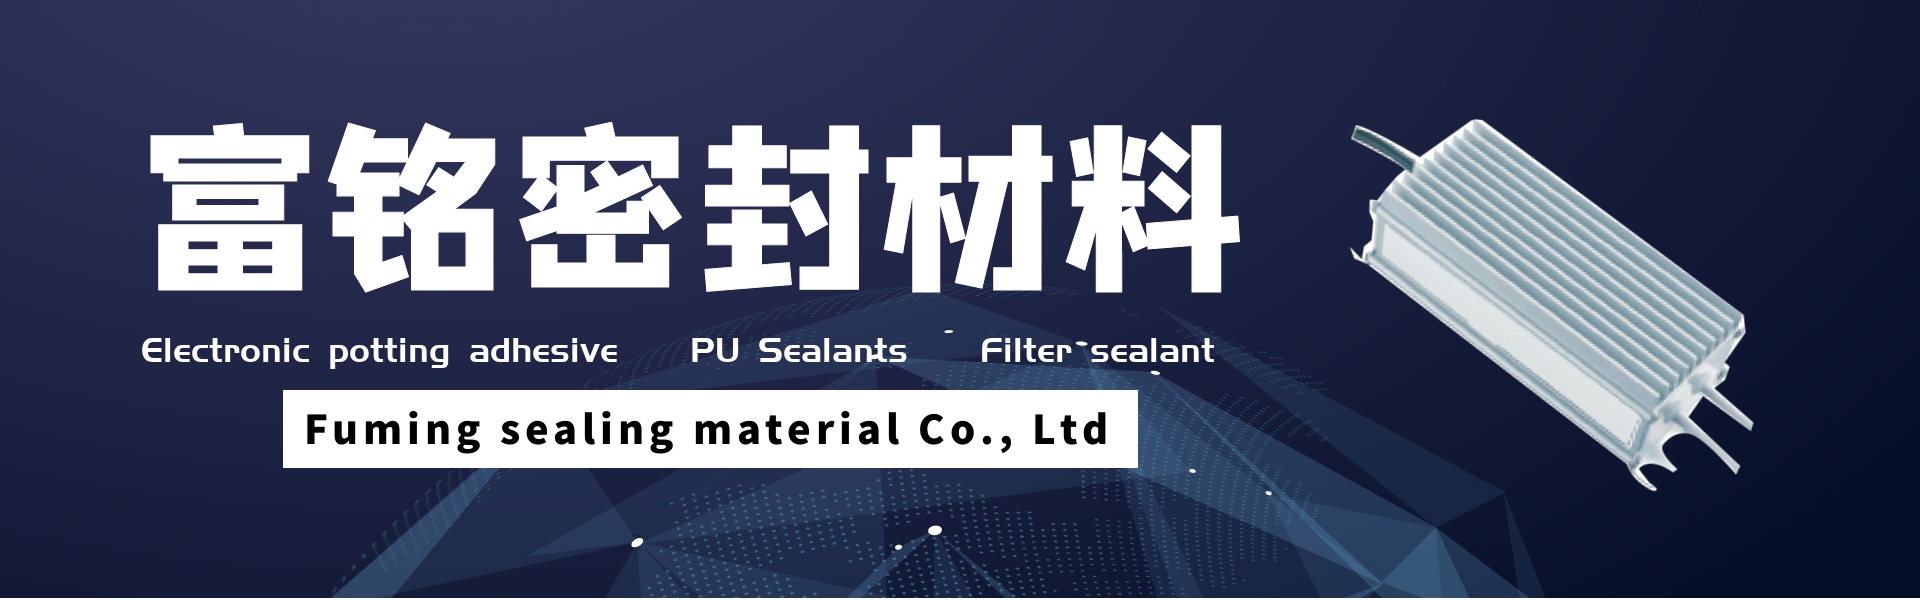 κόλλα ηλεκτρονικής γλάστρας, σφραγιστικά pu, στεγανωτικά φίλτρου,Dongguan fuming sealing material Co., Ltd